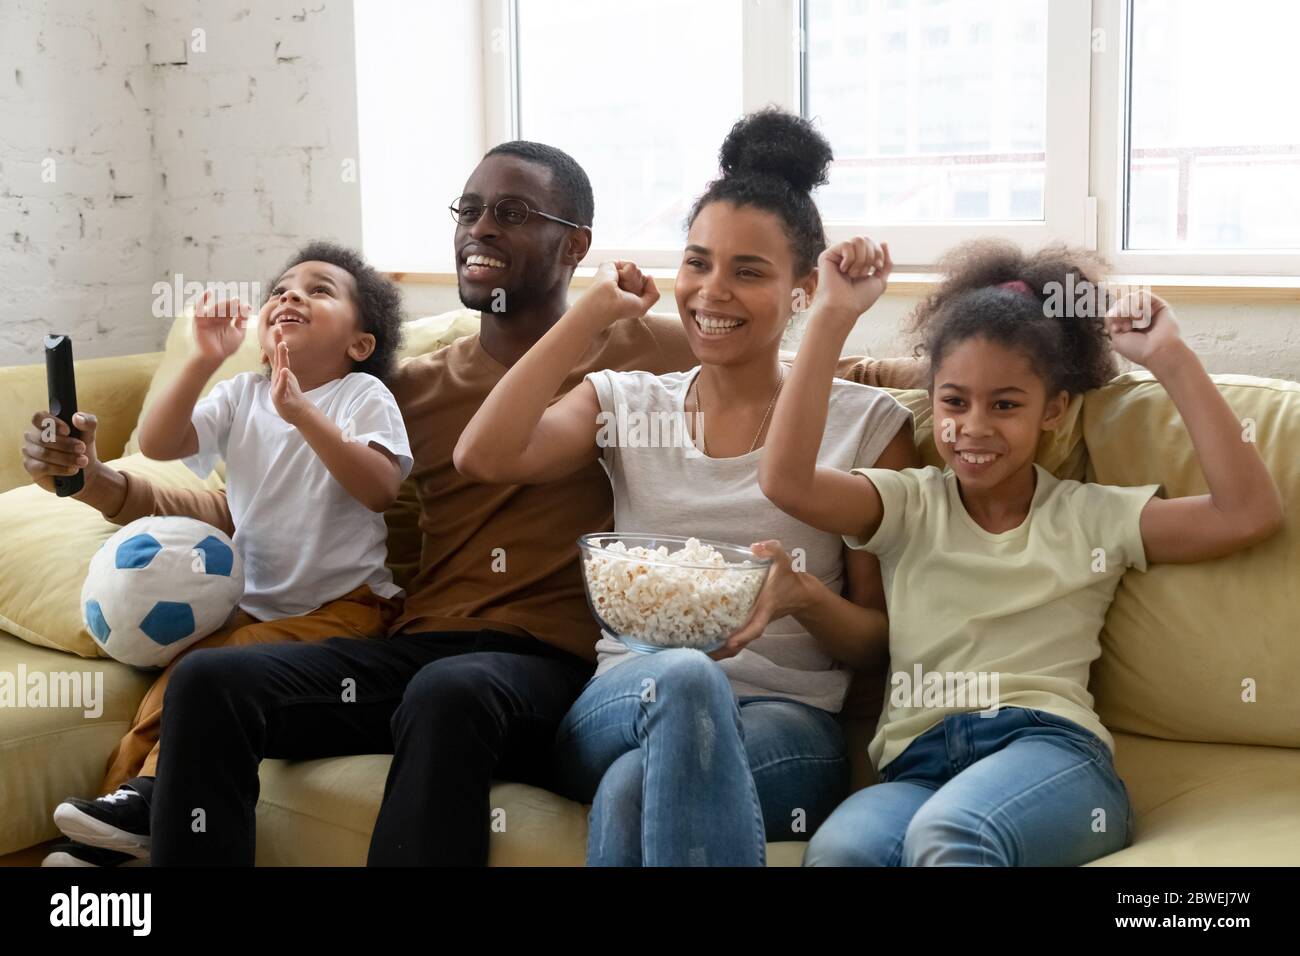 Les amateurs de football familial africains regardant un match assis sur un canapé à l'intérieur Banque D'Images